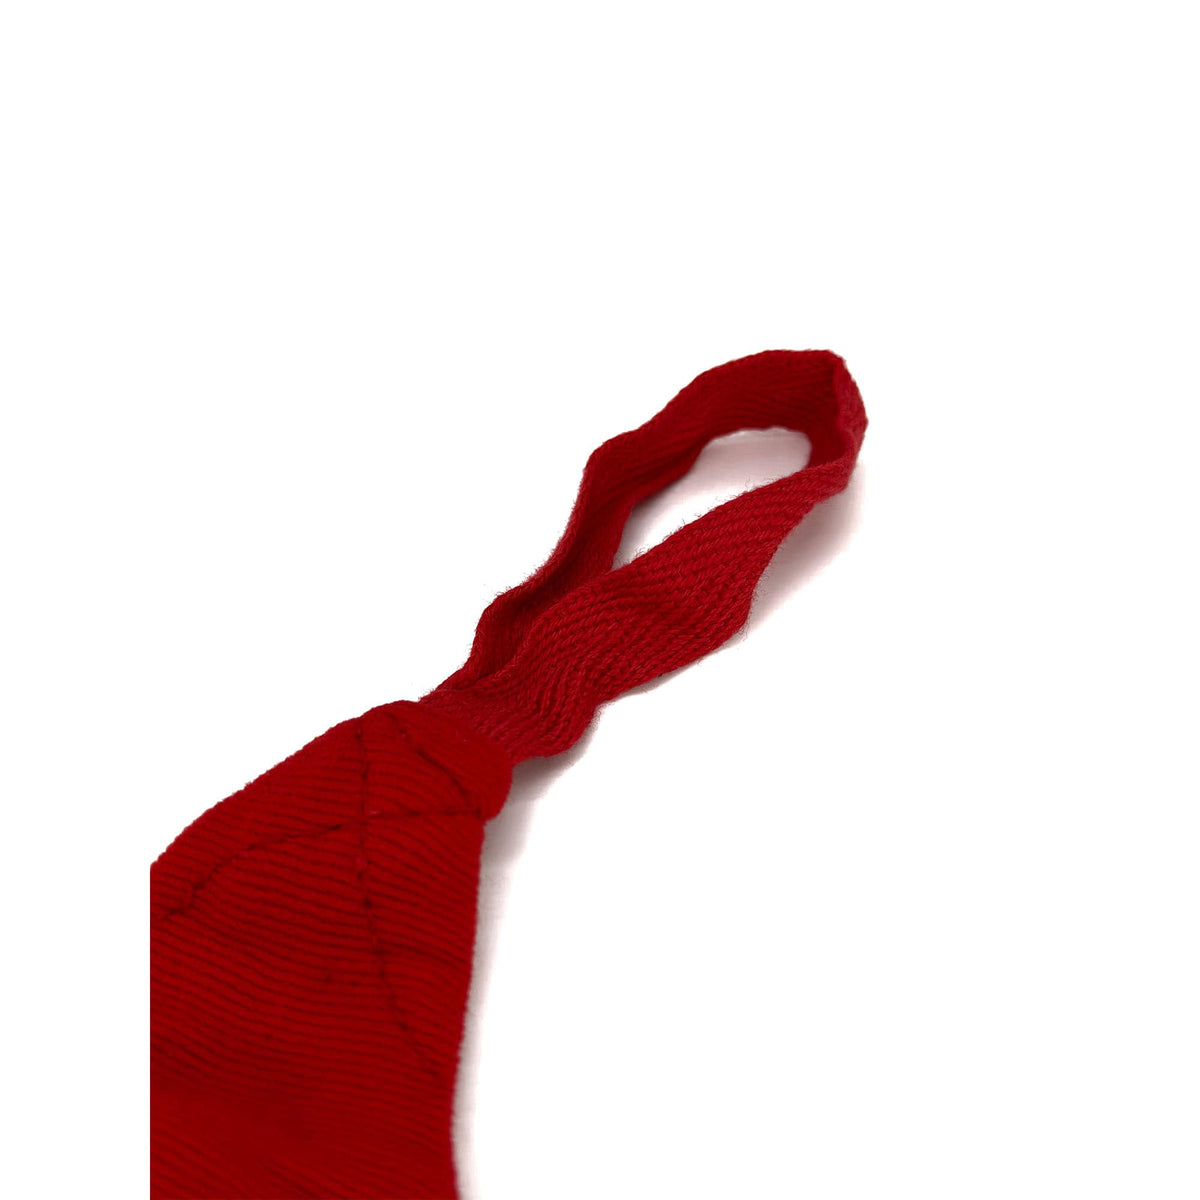 Nahaufnahme der Daumenschlaufe an der roten Boxbandage, hervorgehoben durch ihr präzises Design für zusätzlichen Halt und einfaches Anlegen. Die Schlaufe gewährleistet eine sichere Positionierung der Bandage um Hand und Handgelenk für optimalen Schutz beim Training.